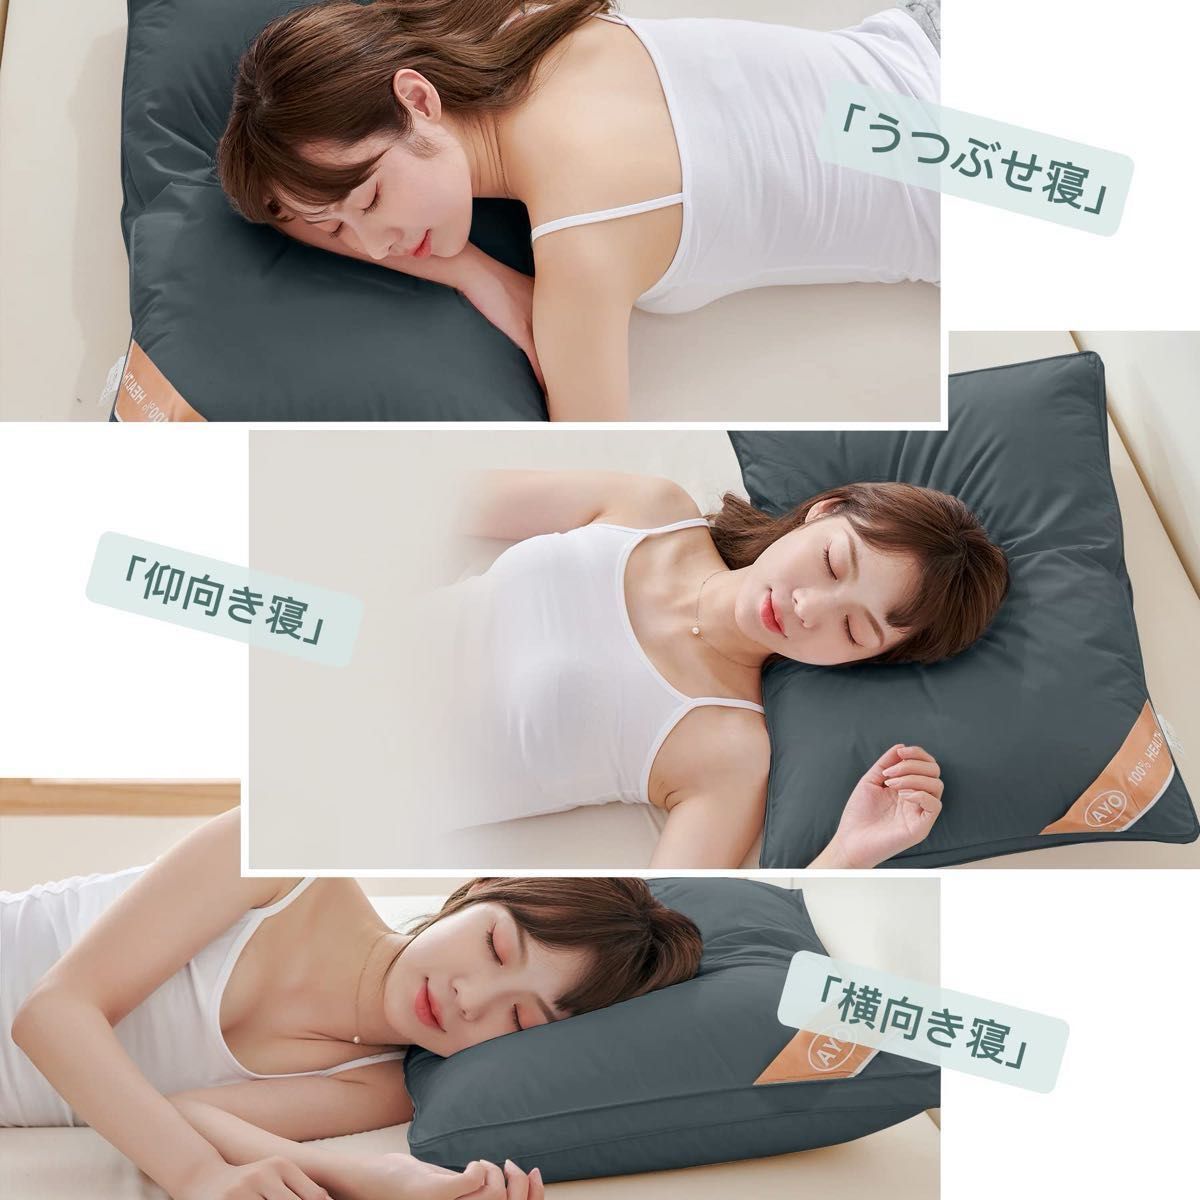 2個セット枕まくら 高級ホテル仕様 高反発枕 横向き対応 丸洗い可能 立体構造 グレー 枕ライナー取り外し可グレー63x43cm